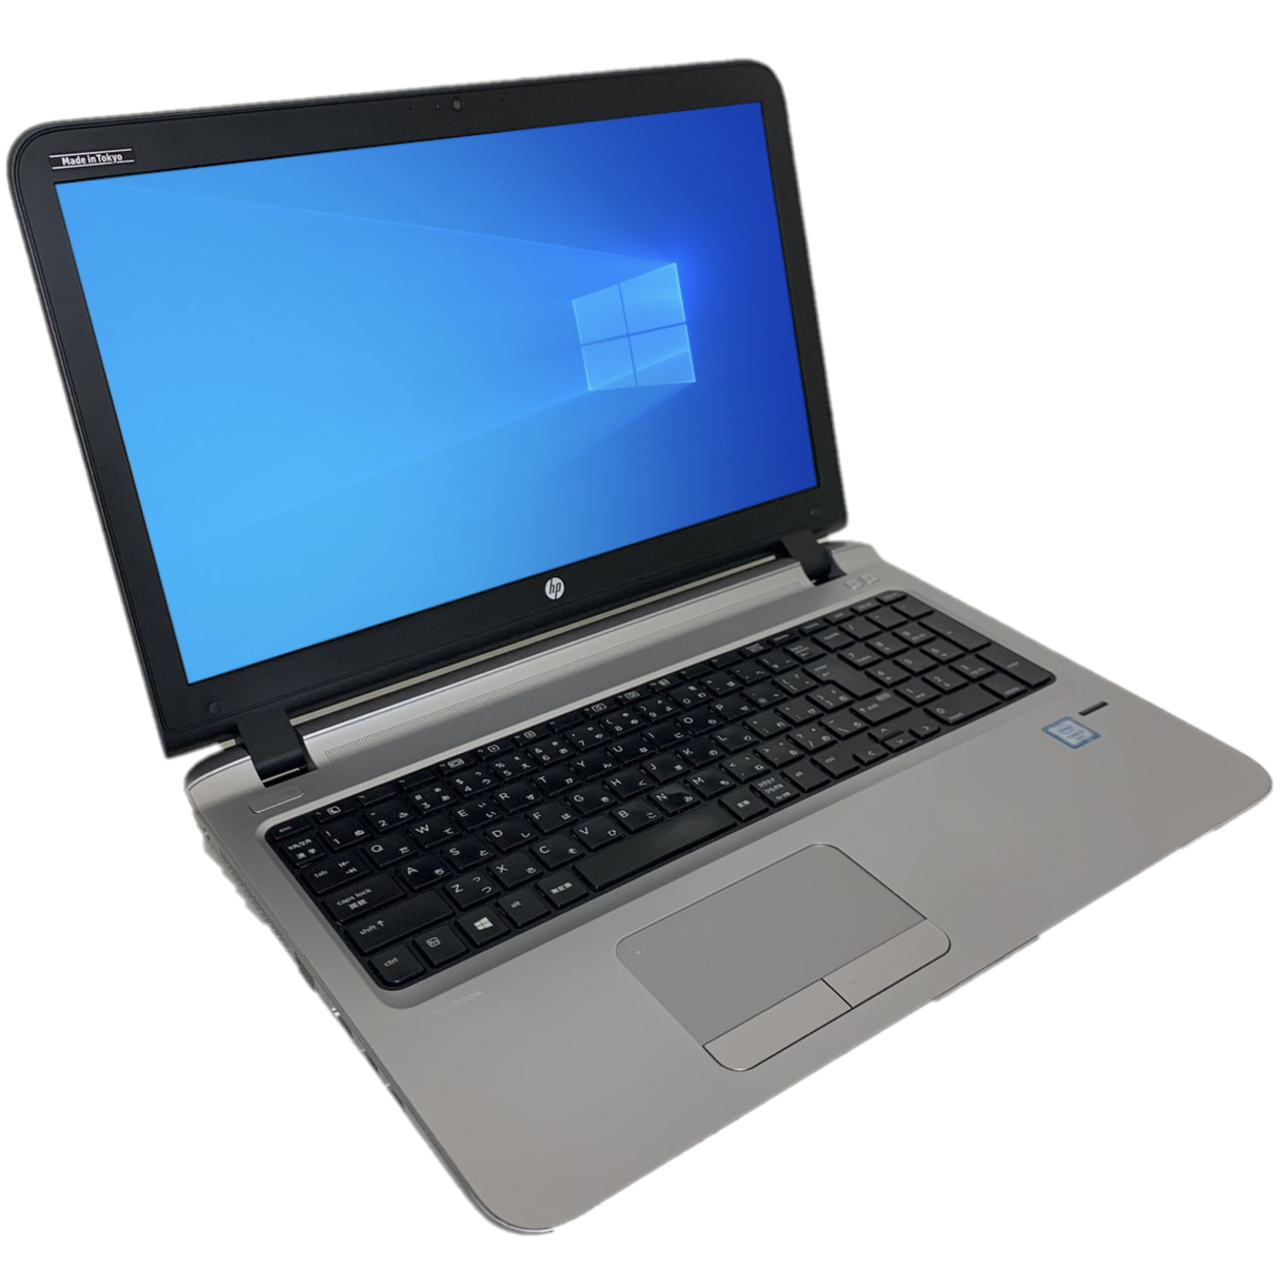 HP ProBook 450 G3 i5-6200U メモリ8GB SSD128GB カメラあり [Cランク] bluetooth 15.6インチ ノートパソコン 中古パソコン専門店 PCスマイル